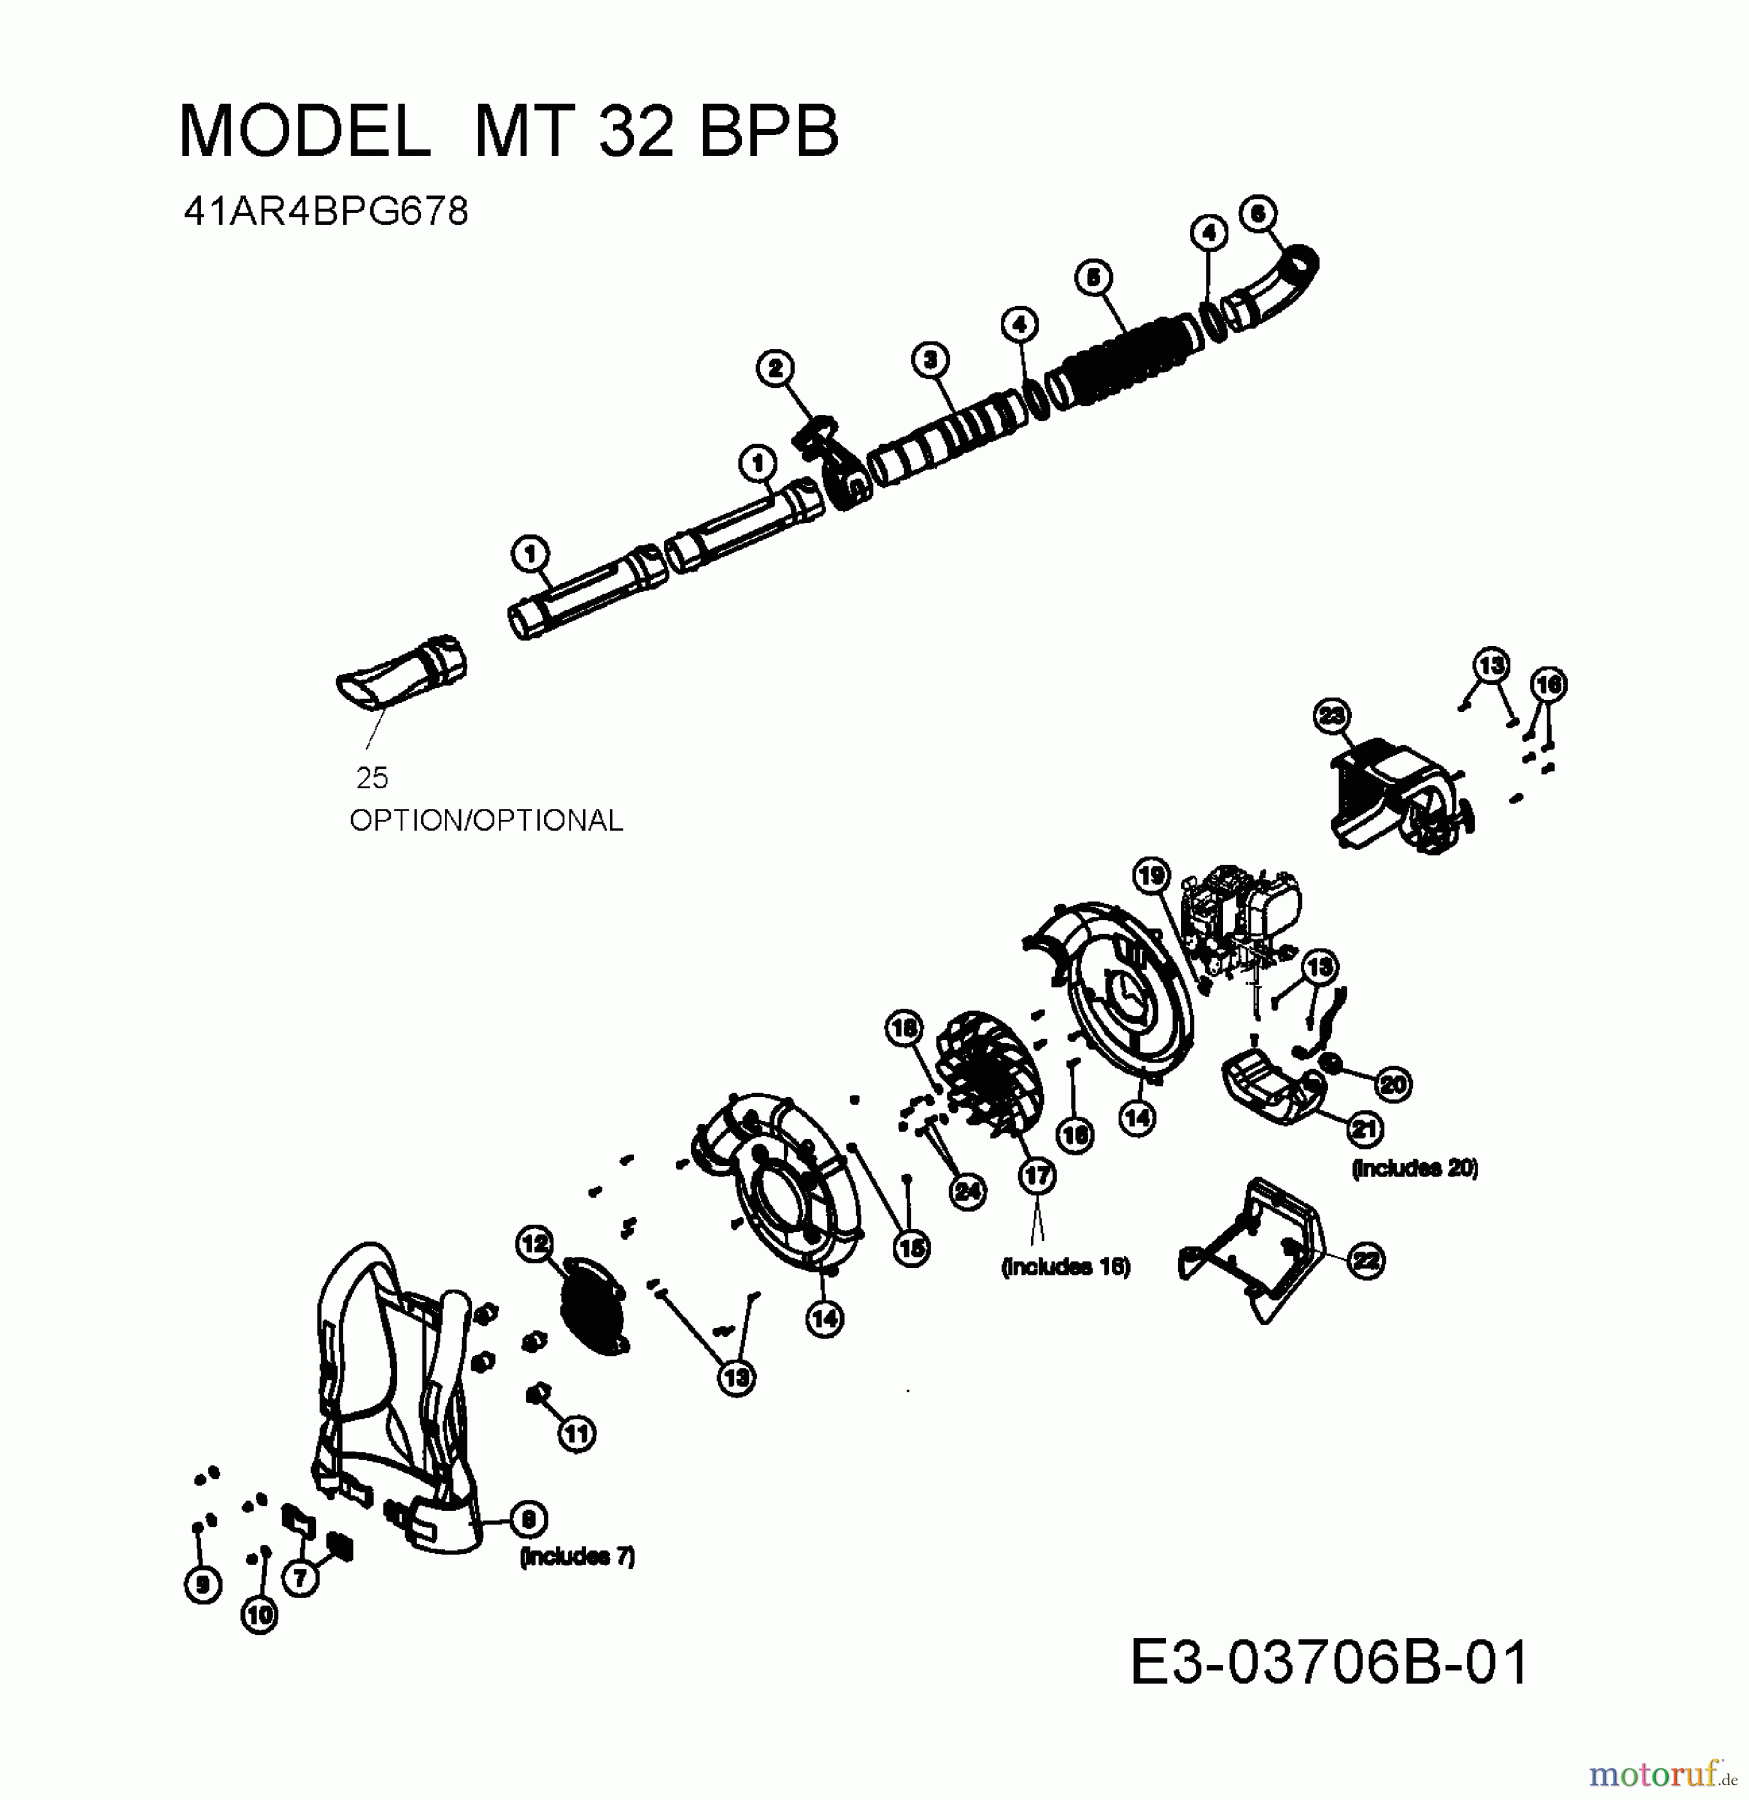  MTD Souffleur de feuille, Aspirateur de feuille MT 32 BPB 41AR4BPG678  (2010) Machine de base